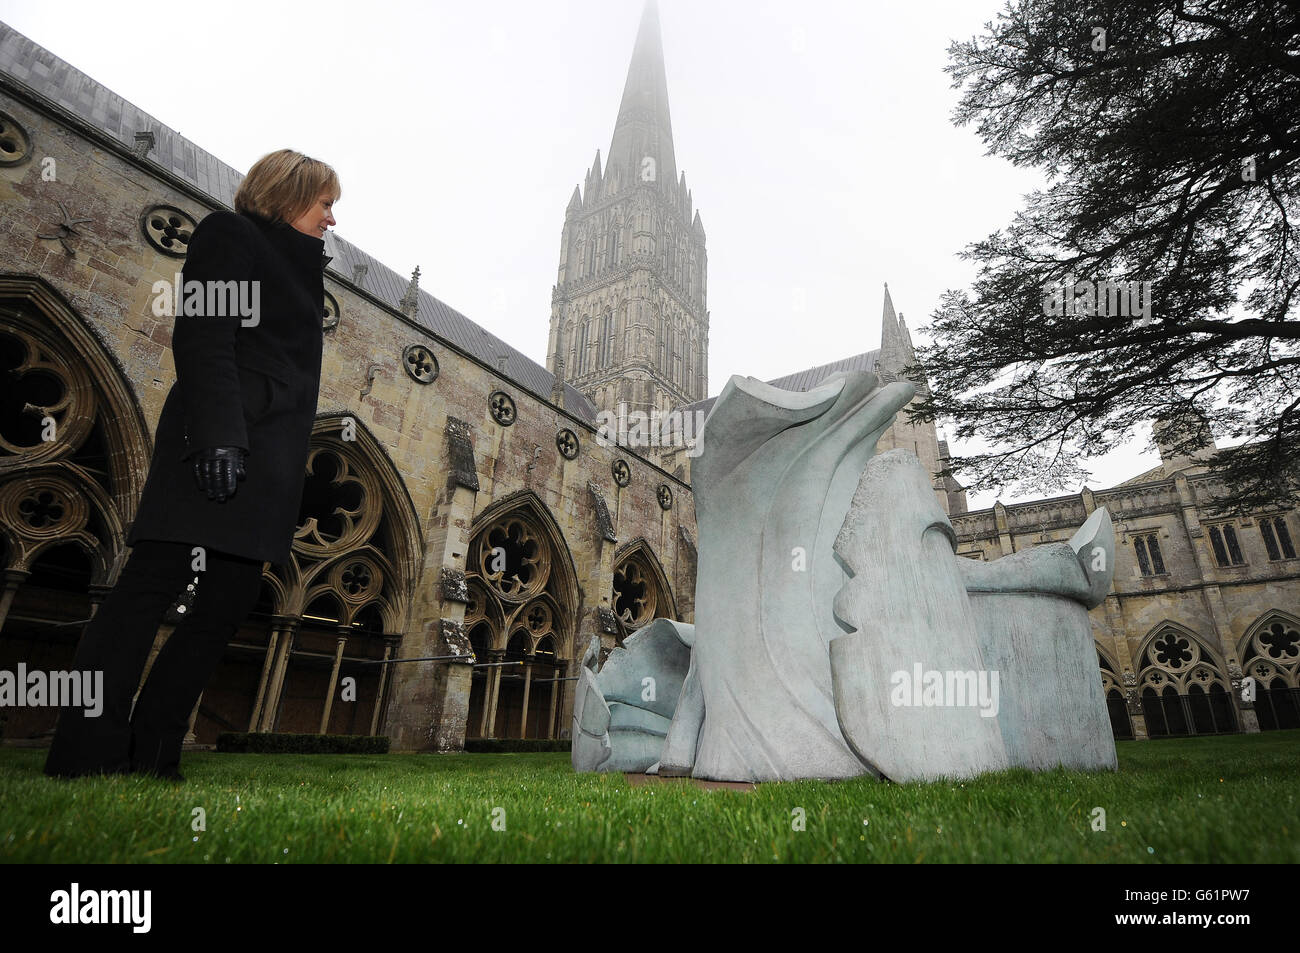 Eine Bronzeskulptur namens Souls der Künstlerin Helaine Blumenfeld auf dem Gelände der Kathedrale von Salisbury, die Teil einer Ausstellung ihrer im Dom installierten Arbeiten ist. Stockfoto